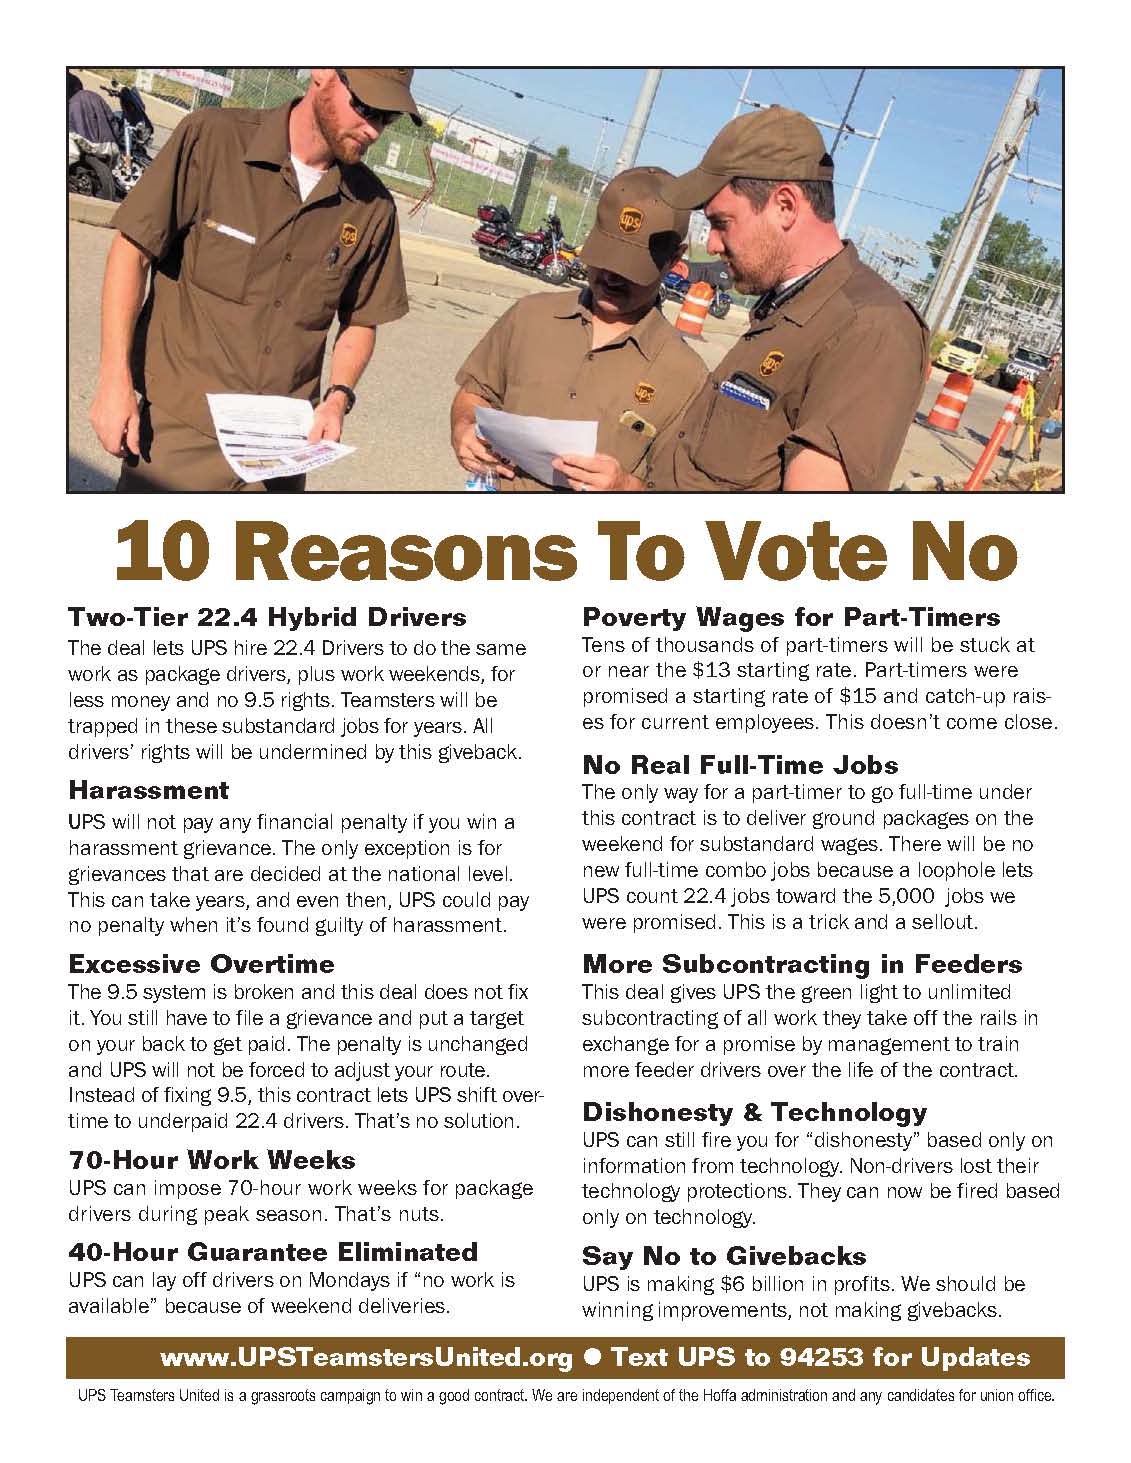 10-reasons-to-vote-no-v2.jpg